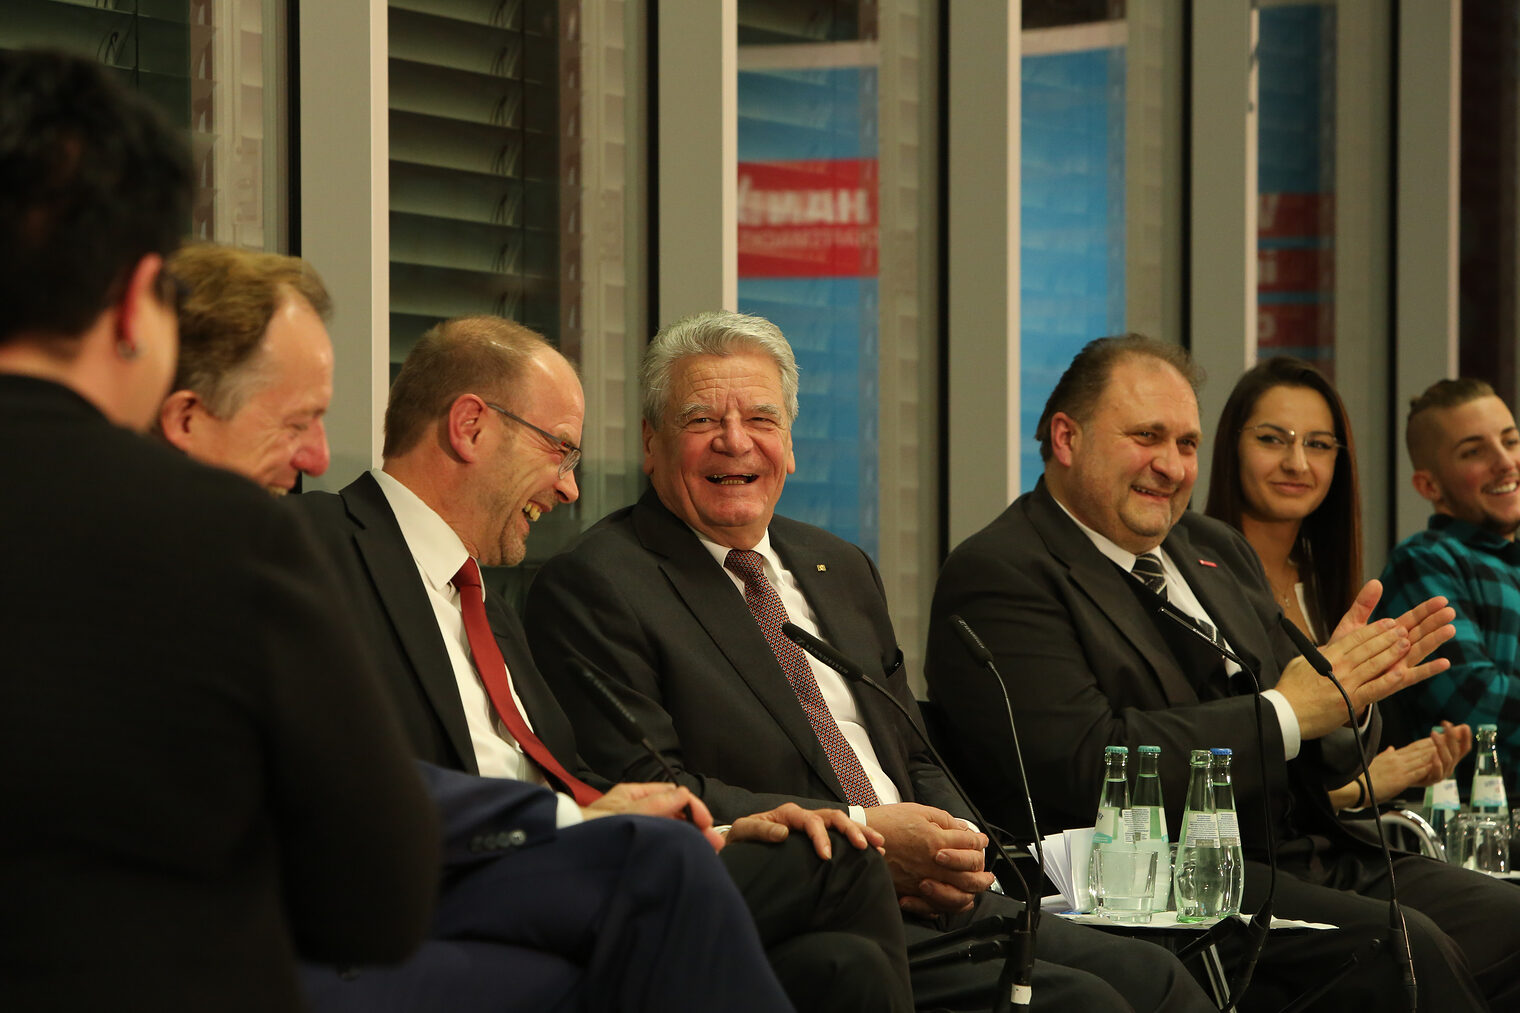 Bundespräsident Joachim Gauck besucht das Handwerk 127